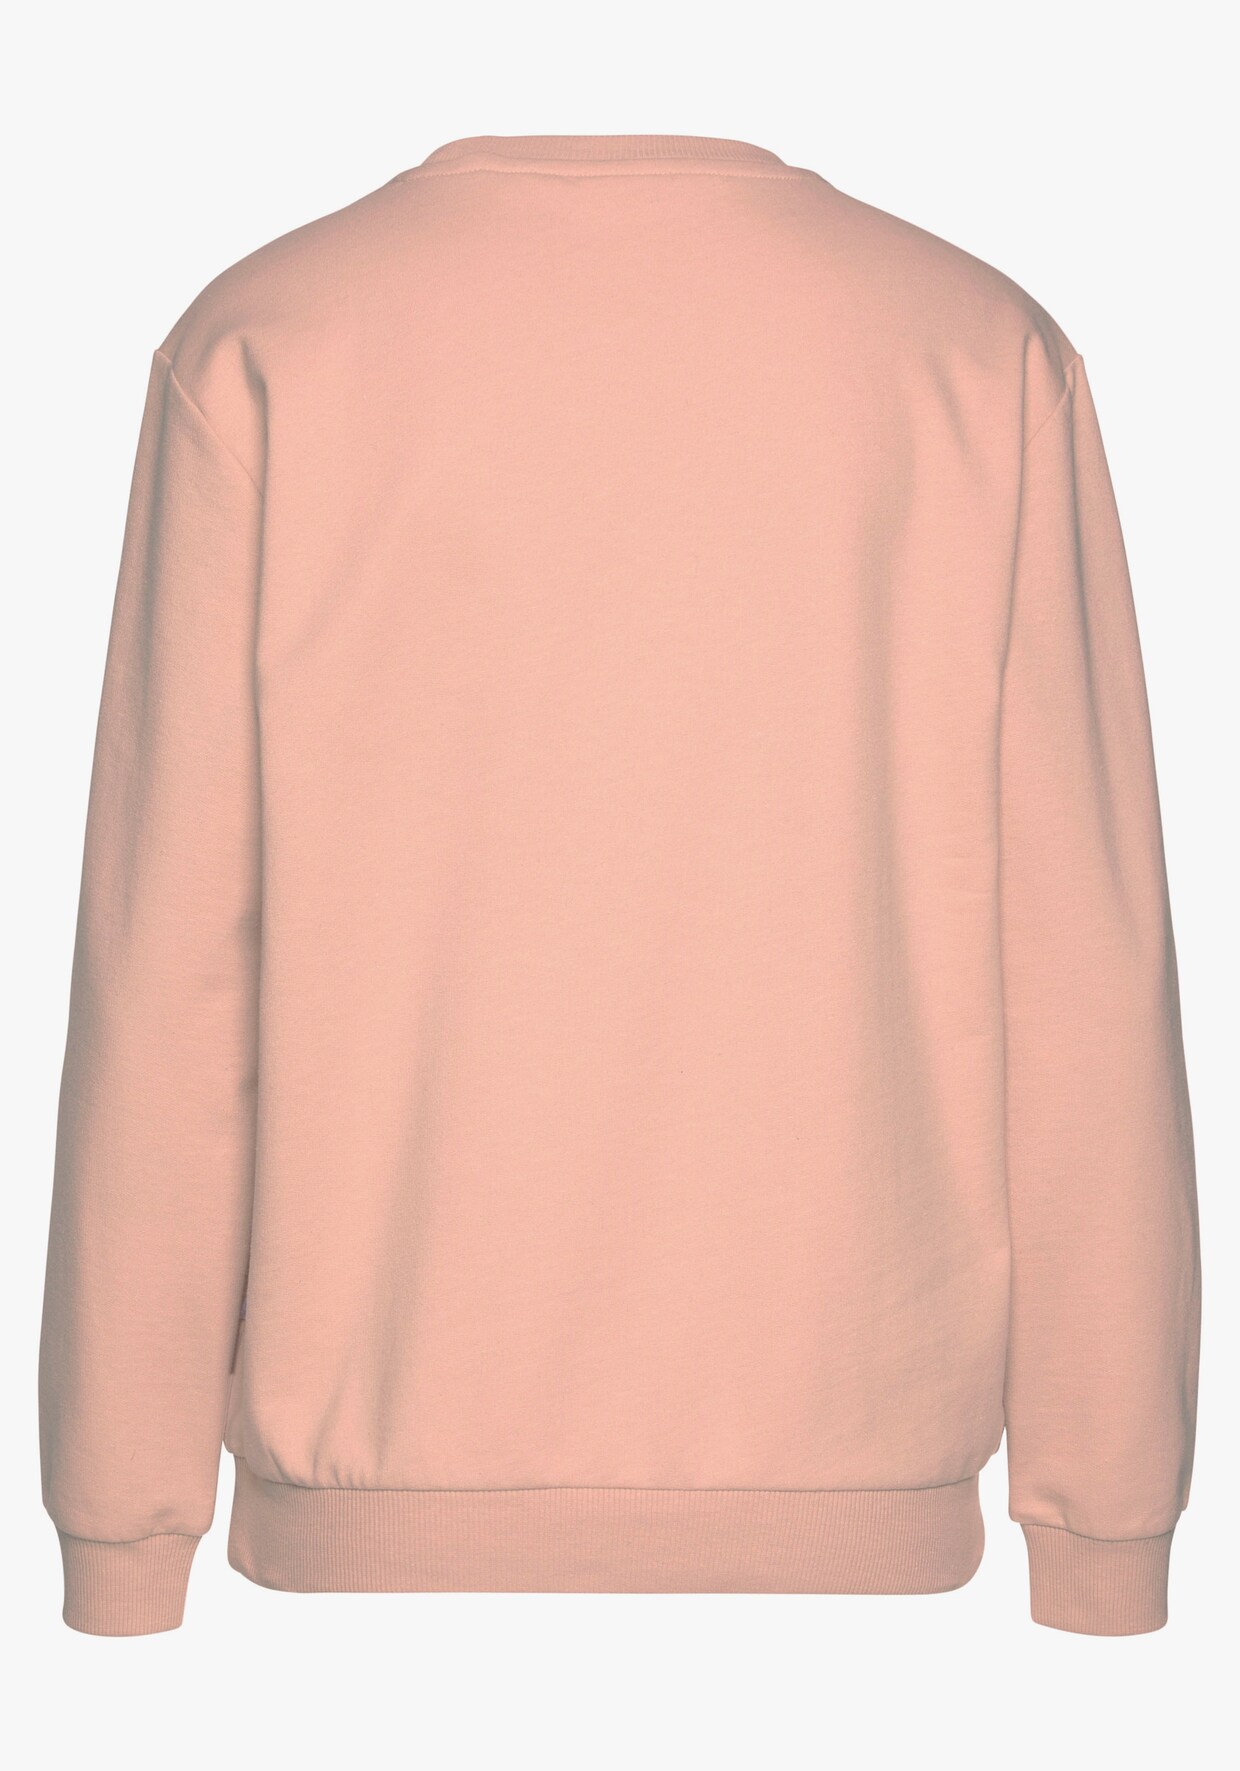 LASCANA Sweat-shirt - orange clair-beige clair-rose clair